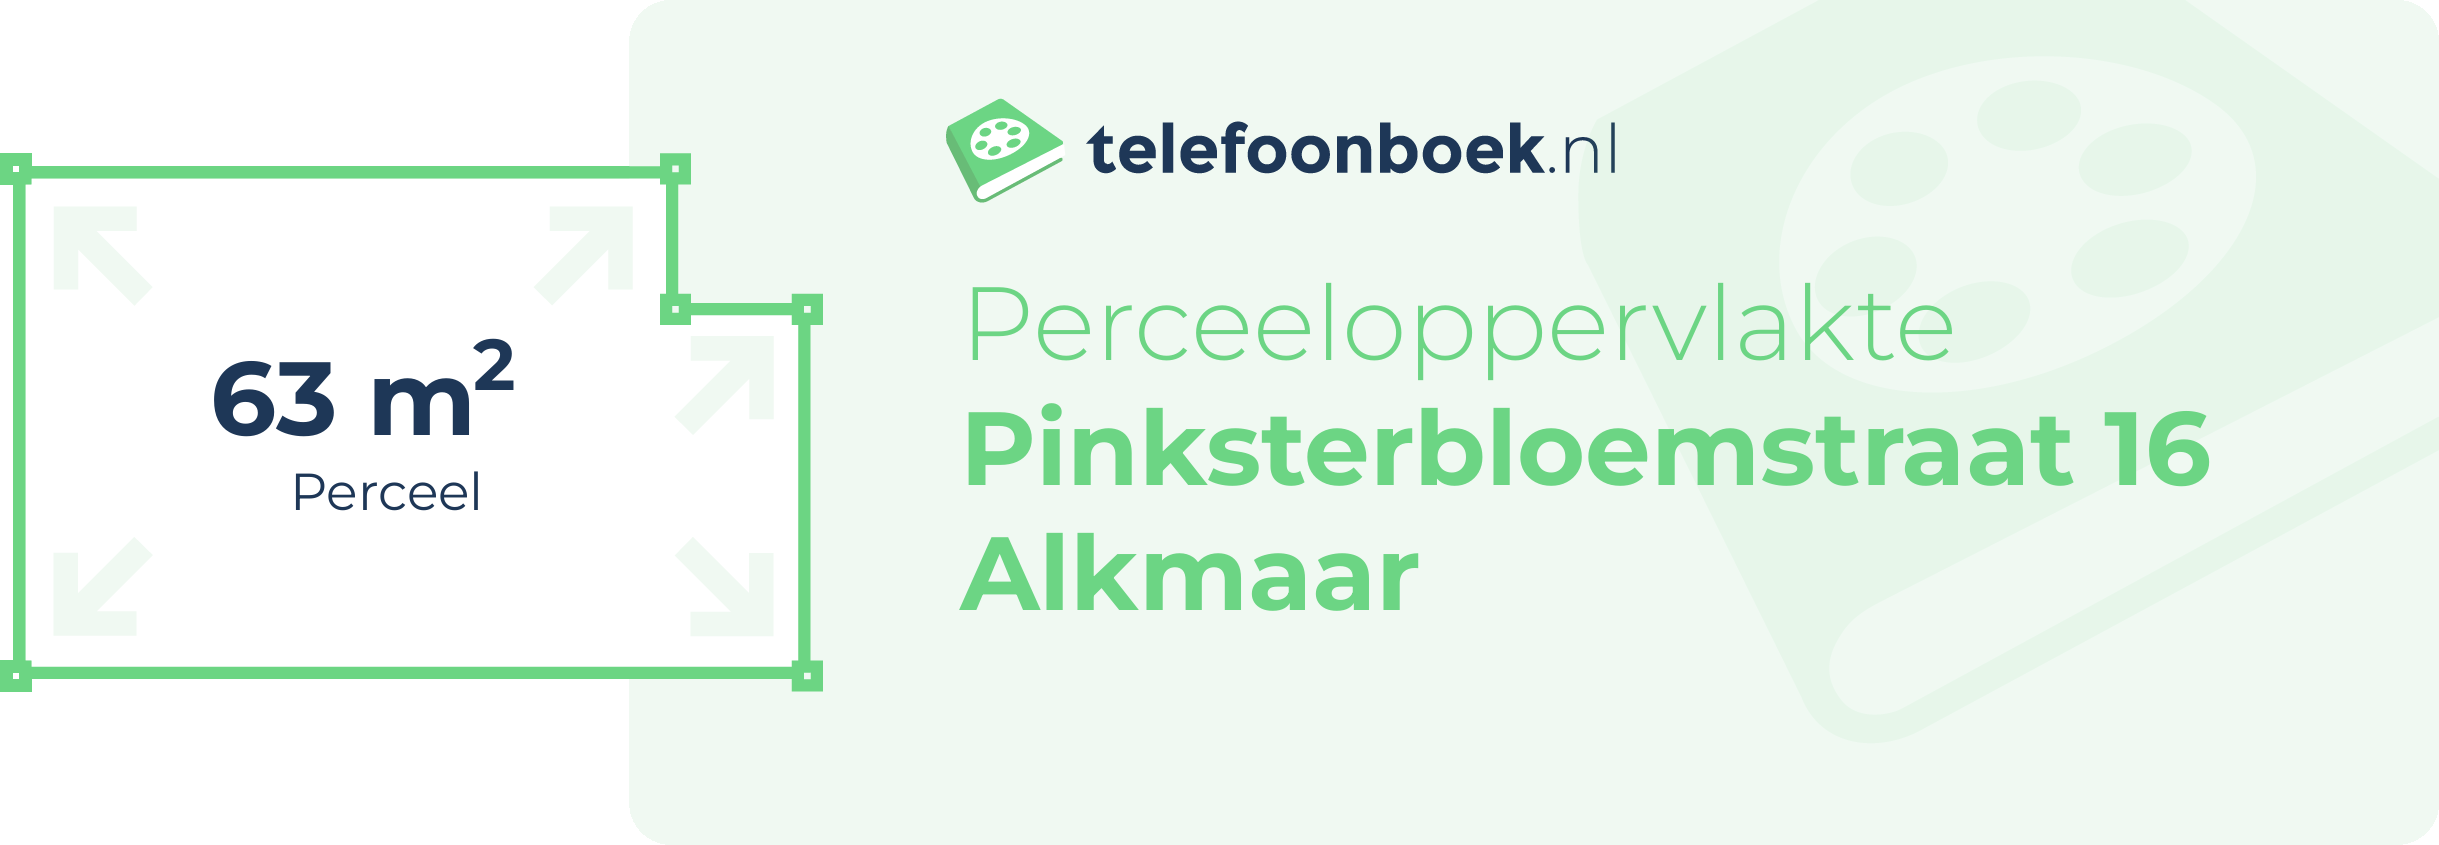 Perceeloppervlakte Pinksterbloemstraat 16 Alkmaar